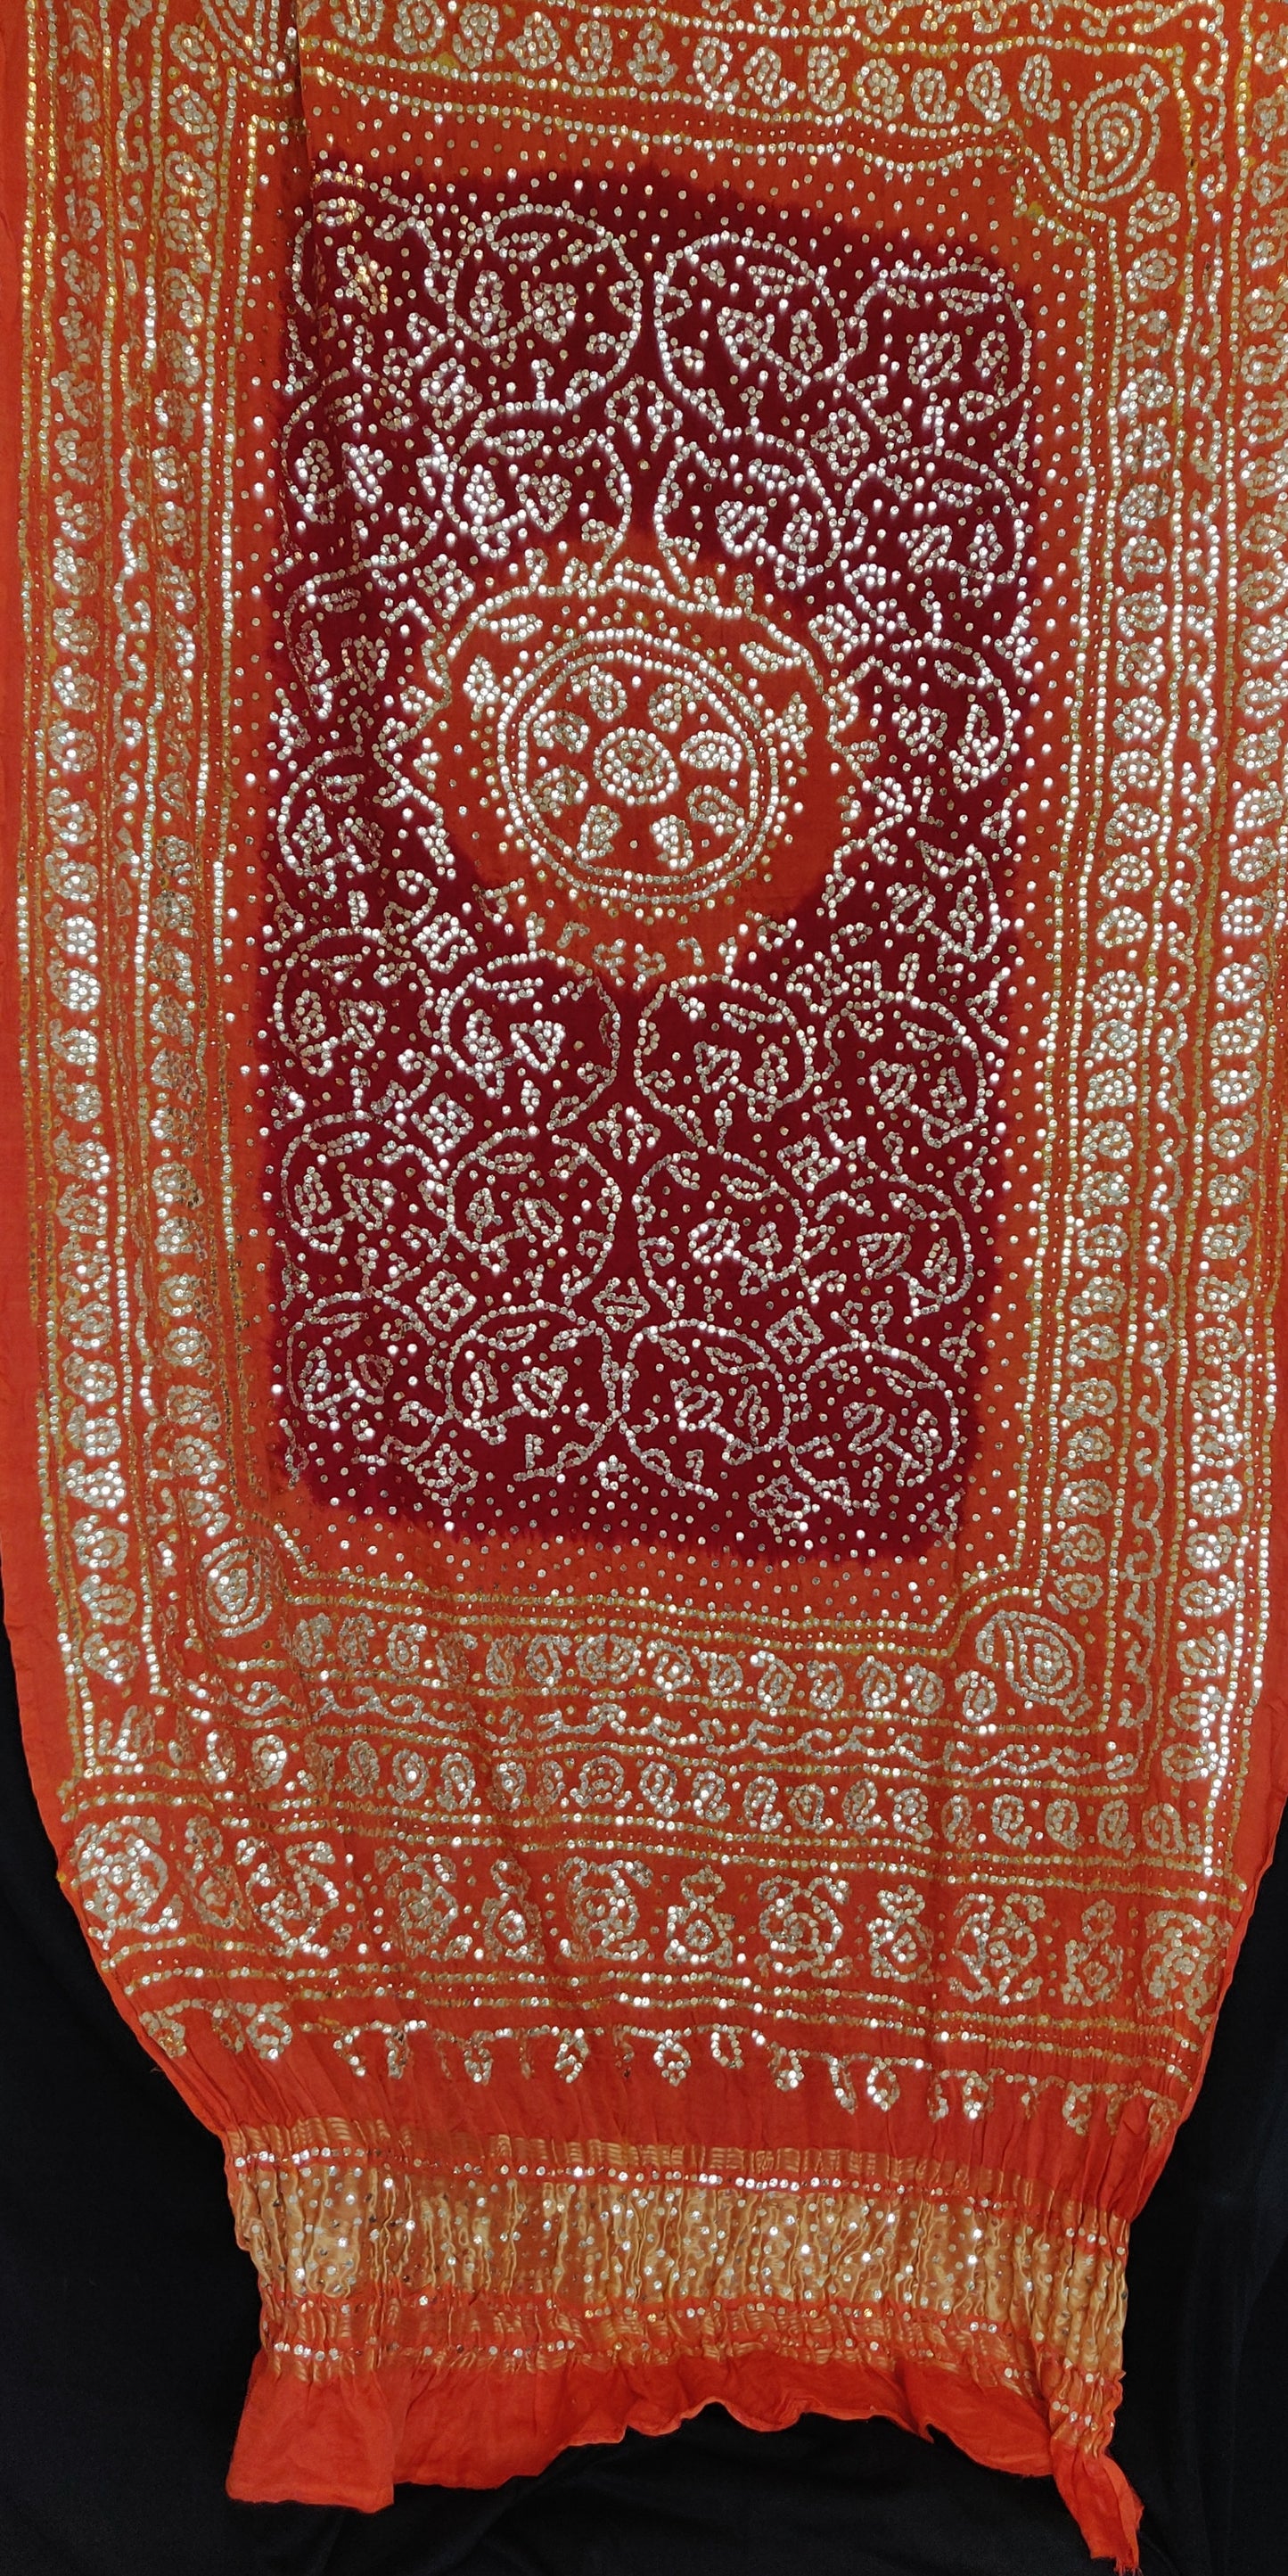 Orange and red gajji silk bandhej dupatta with very heavy mukaish work